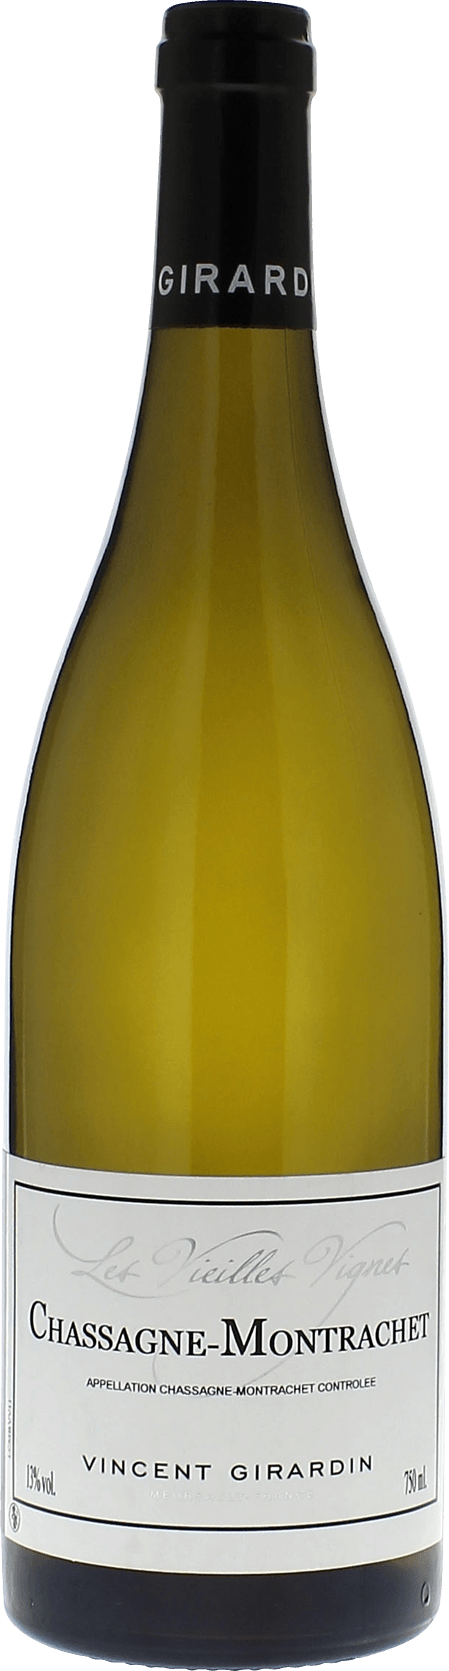 Chassagne montrachet vieilles vignes 2017 Domaine GIRARDIN Vincent, Bourgogne blanc